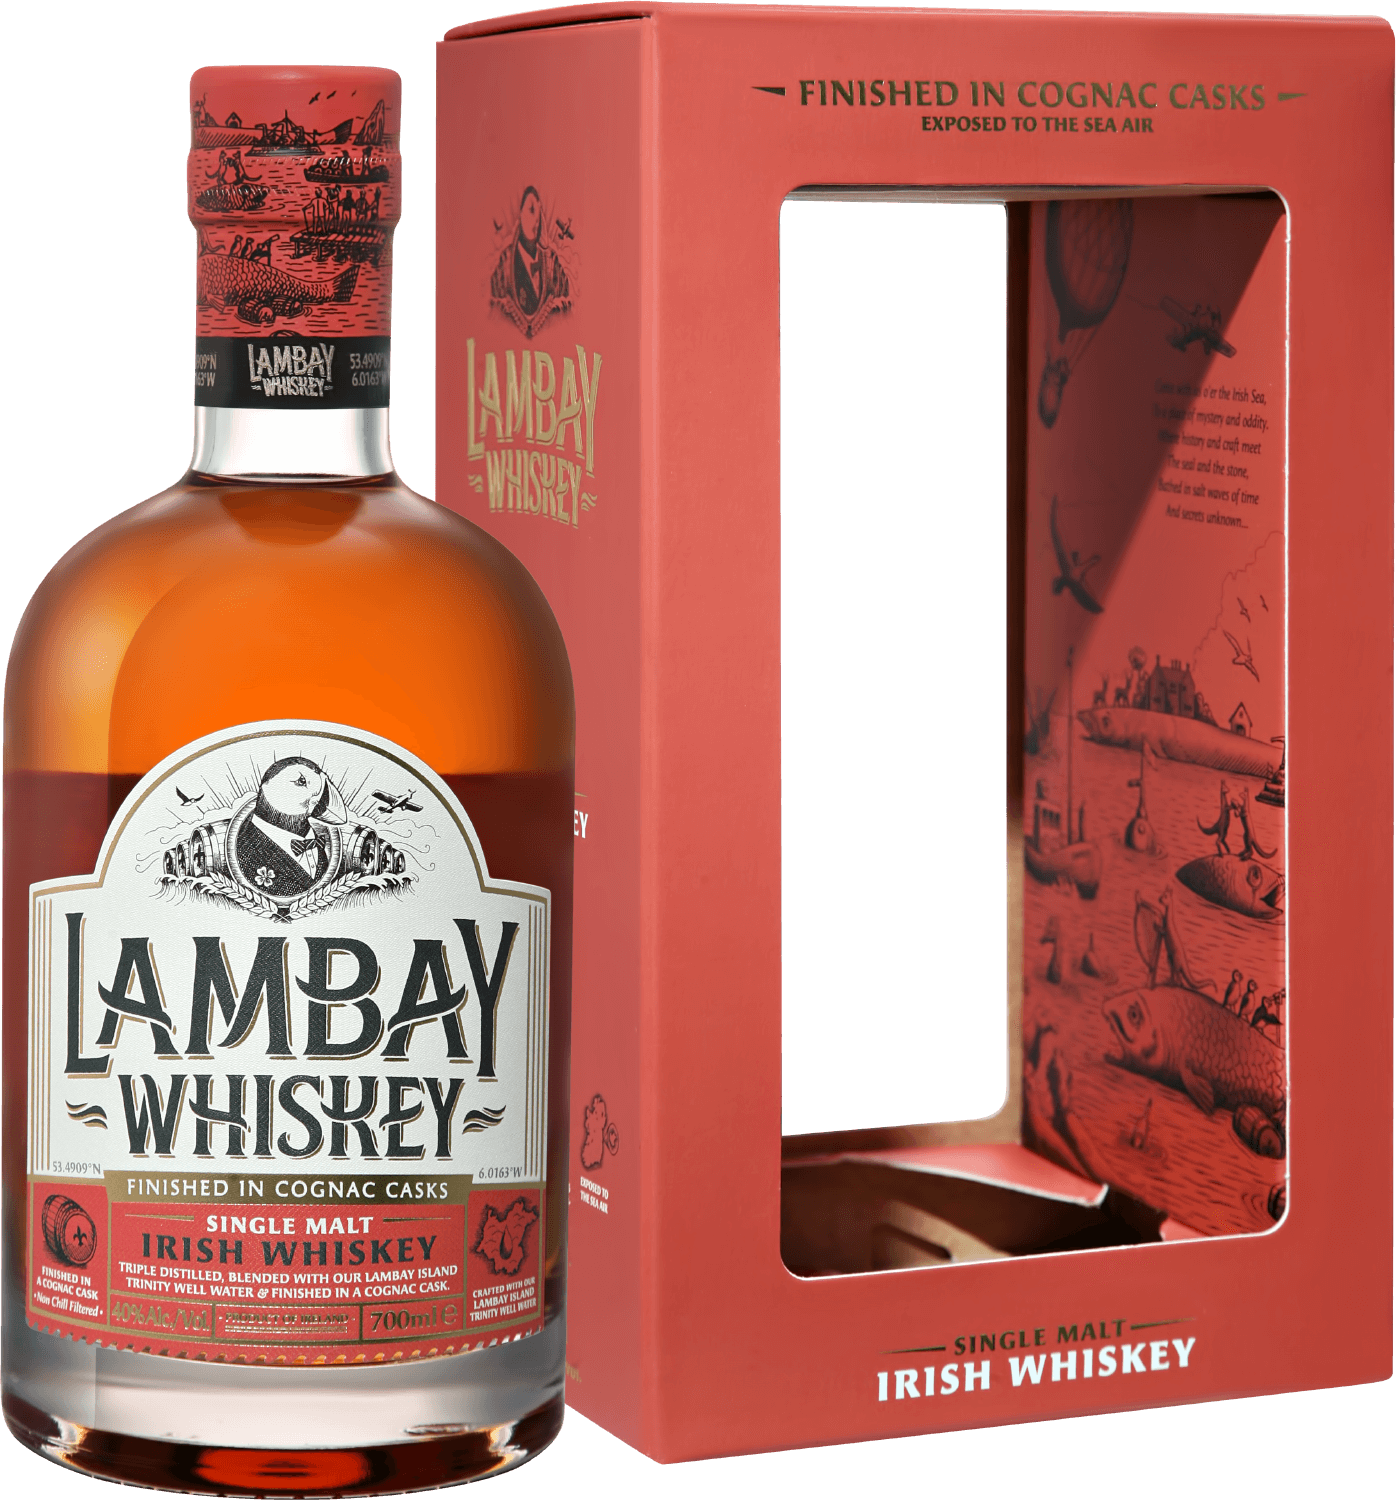 Lambay Single Malt Irish Whiskey 5 y.o. (gift box) dingle batch 5 single malt irish whisky gift box